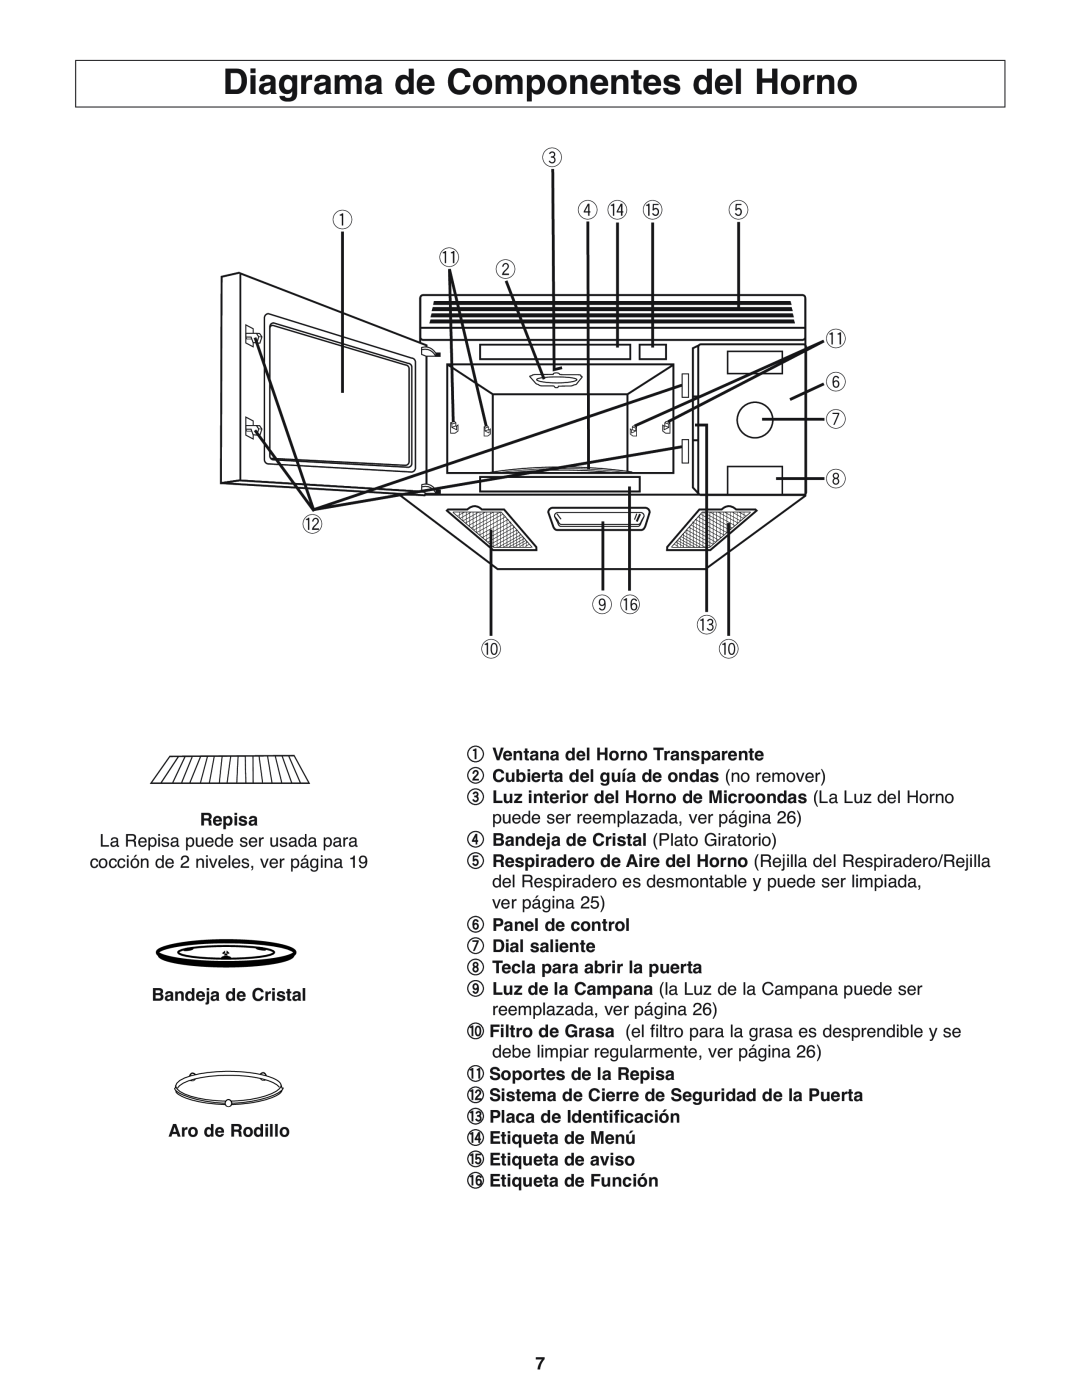 Panasonic NN-H275 operating instructions Diagrama de Componentes del Horno 